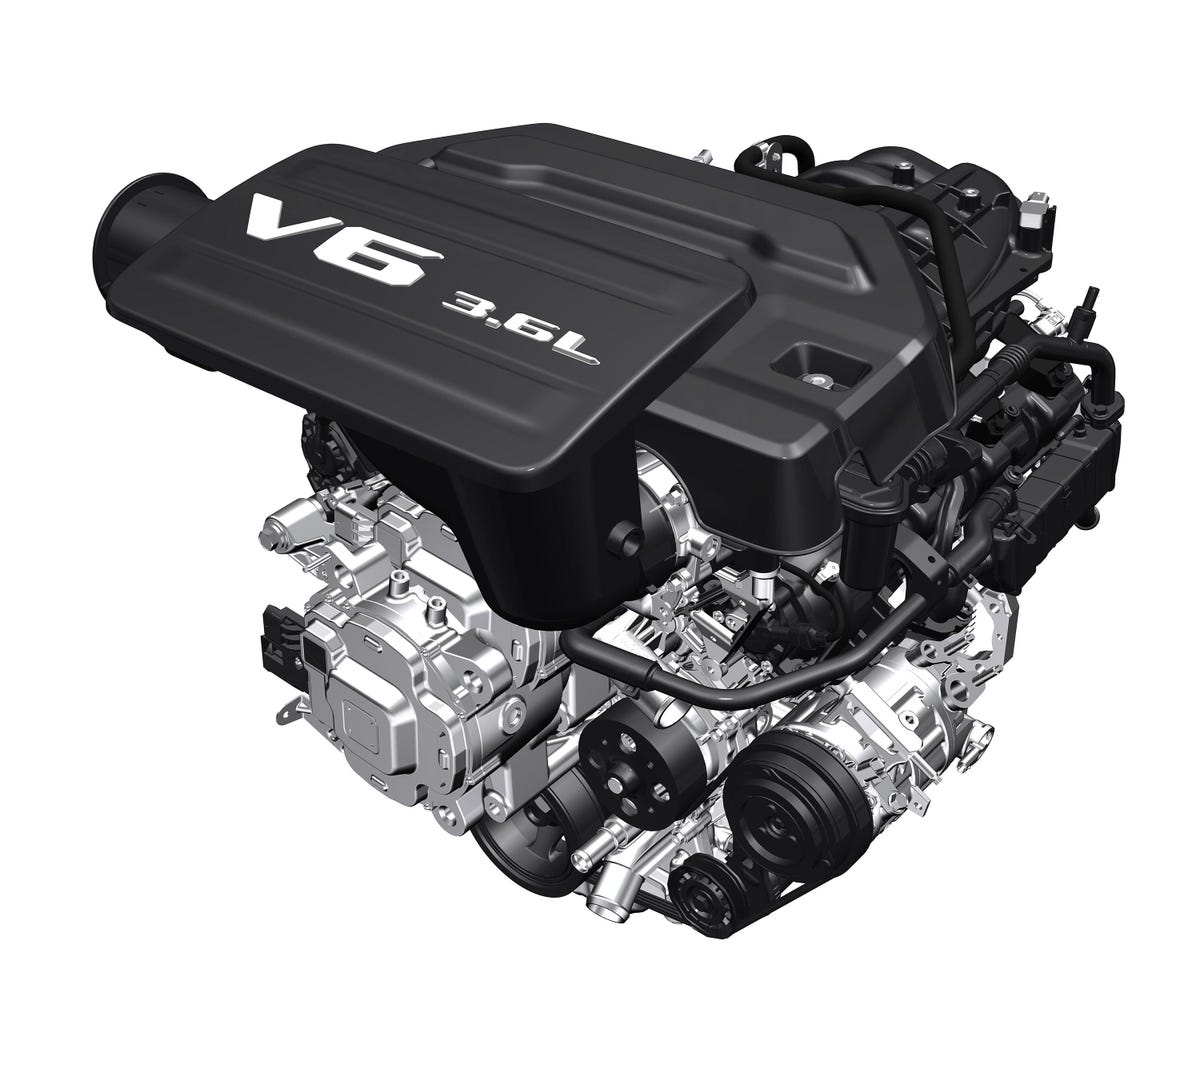 Ram 1500's 3.6-liter 48V eTorque V6 engine